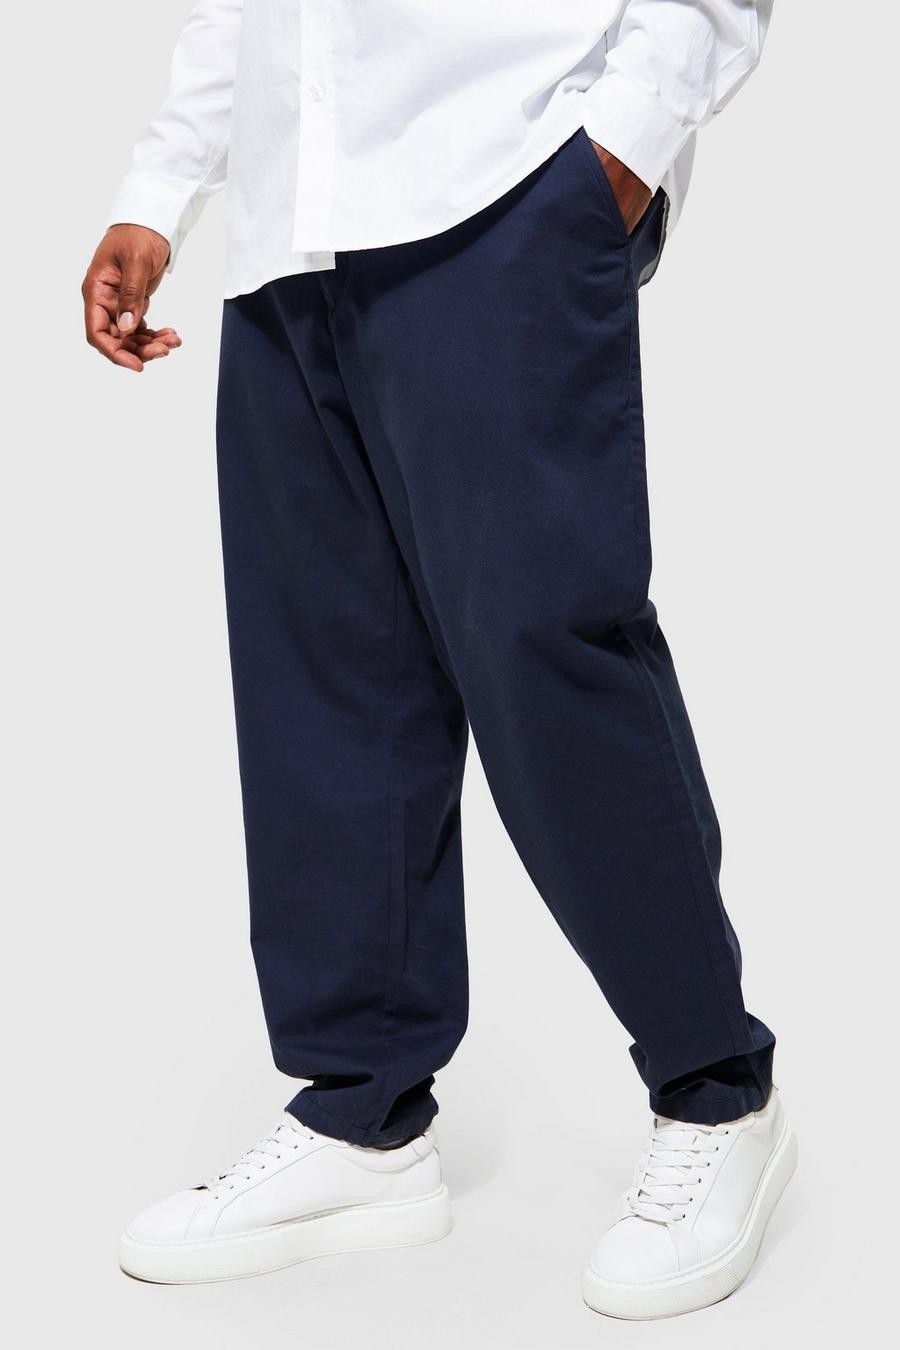 Pantalón Plus chino ajustado, Navy